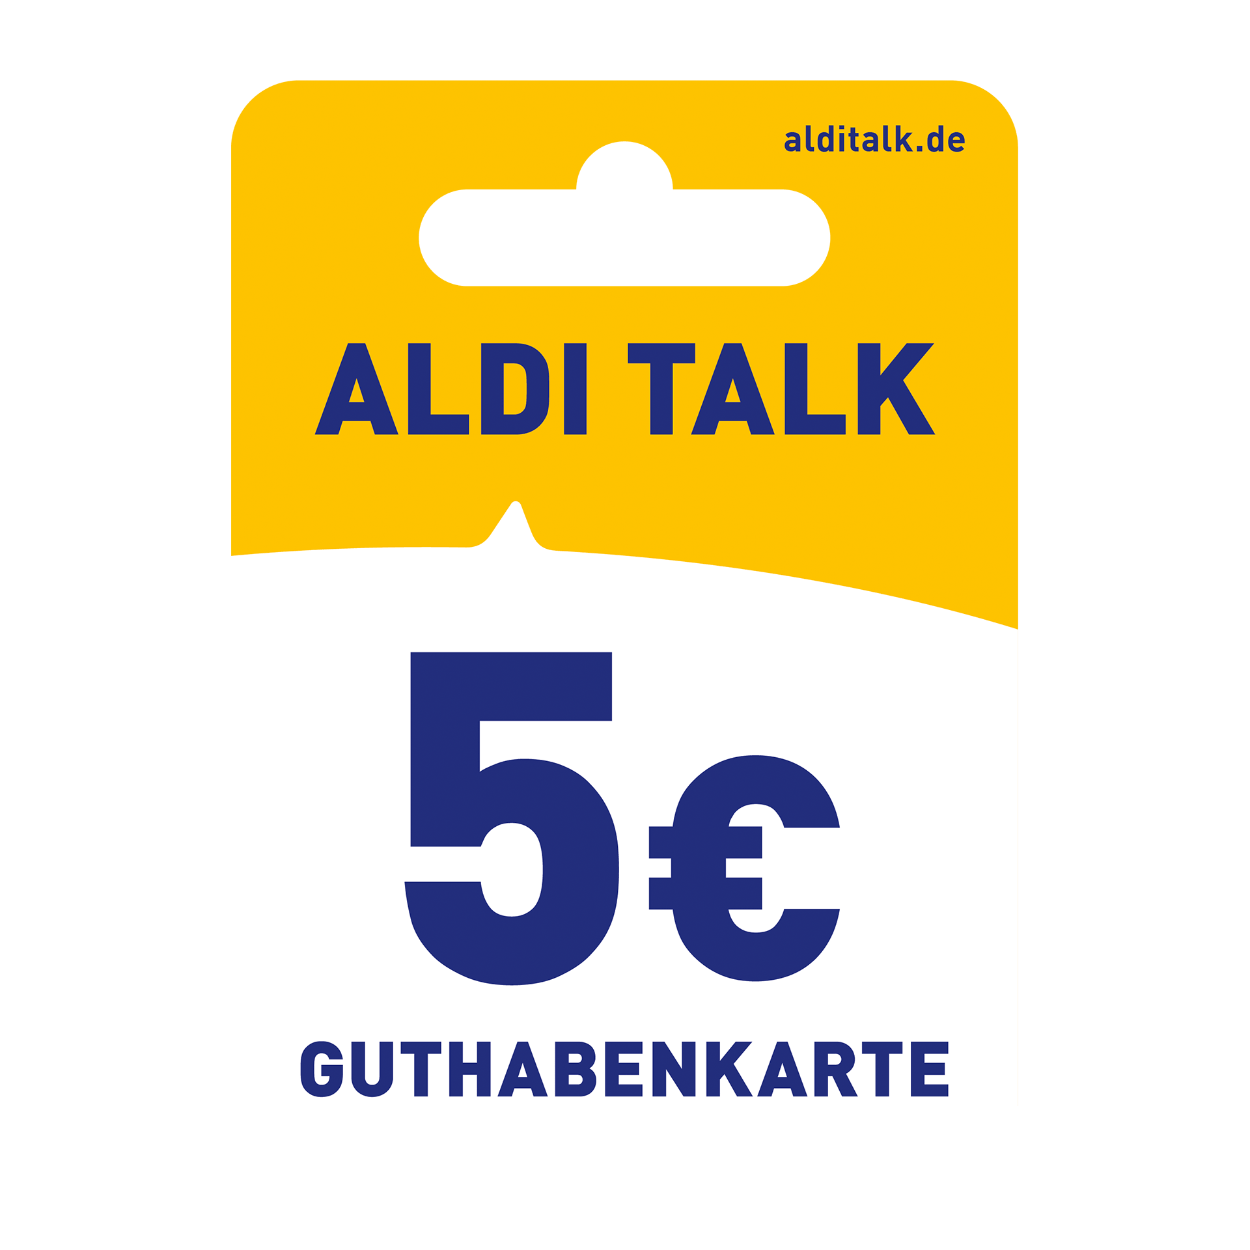 aldi talk travel